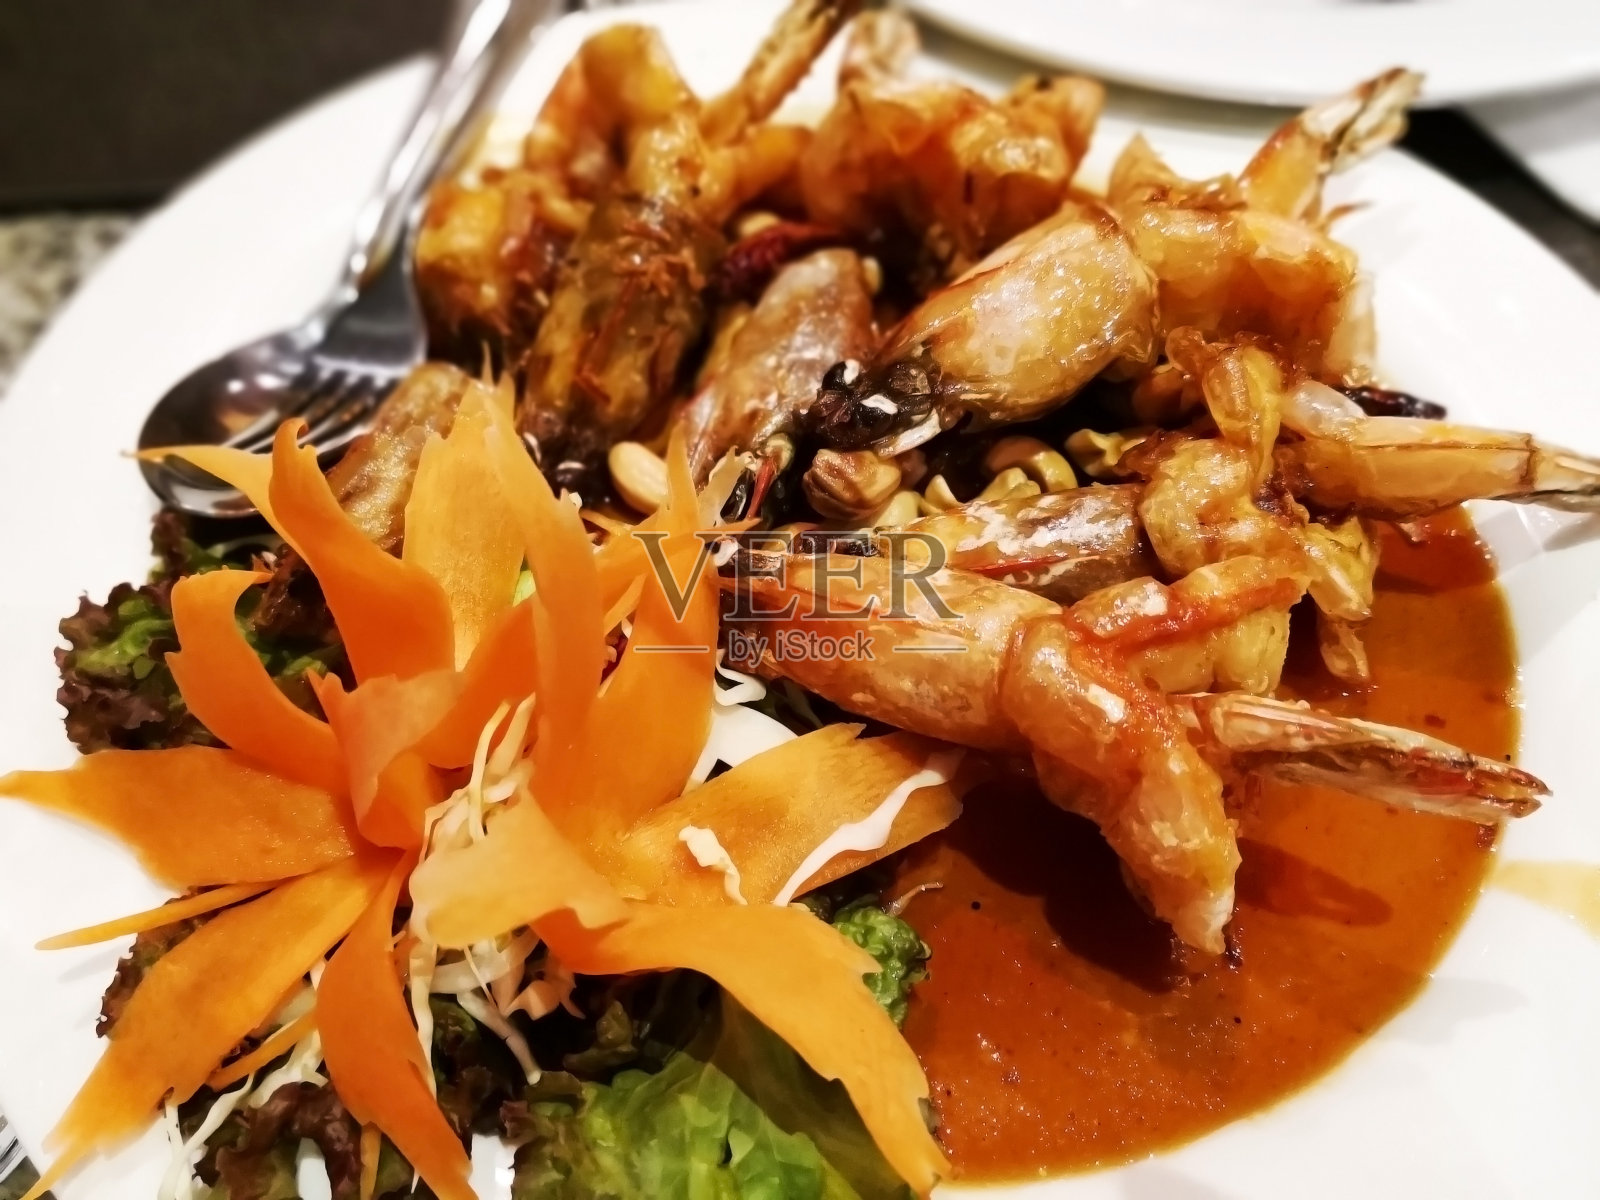 泰国菜的概念。白盘子上的罗望子酱虾仁。味道是辛辣、酸甜的。这道菜用绿橡木、红橡木、切成薄片的卷心菜和胡萝卜来装饰。专注于前景。照片摄影图片